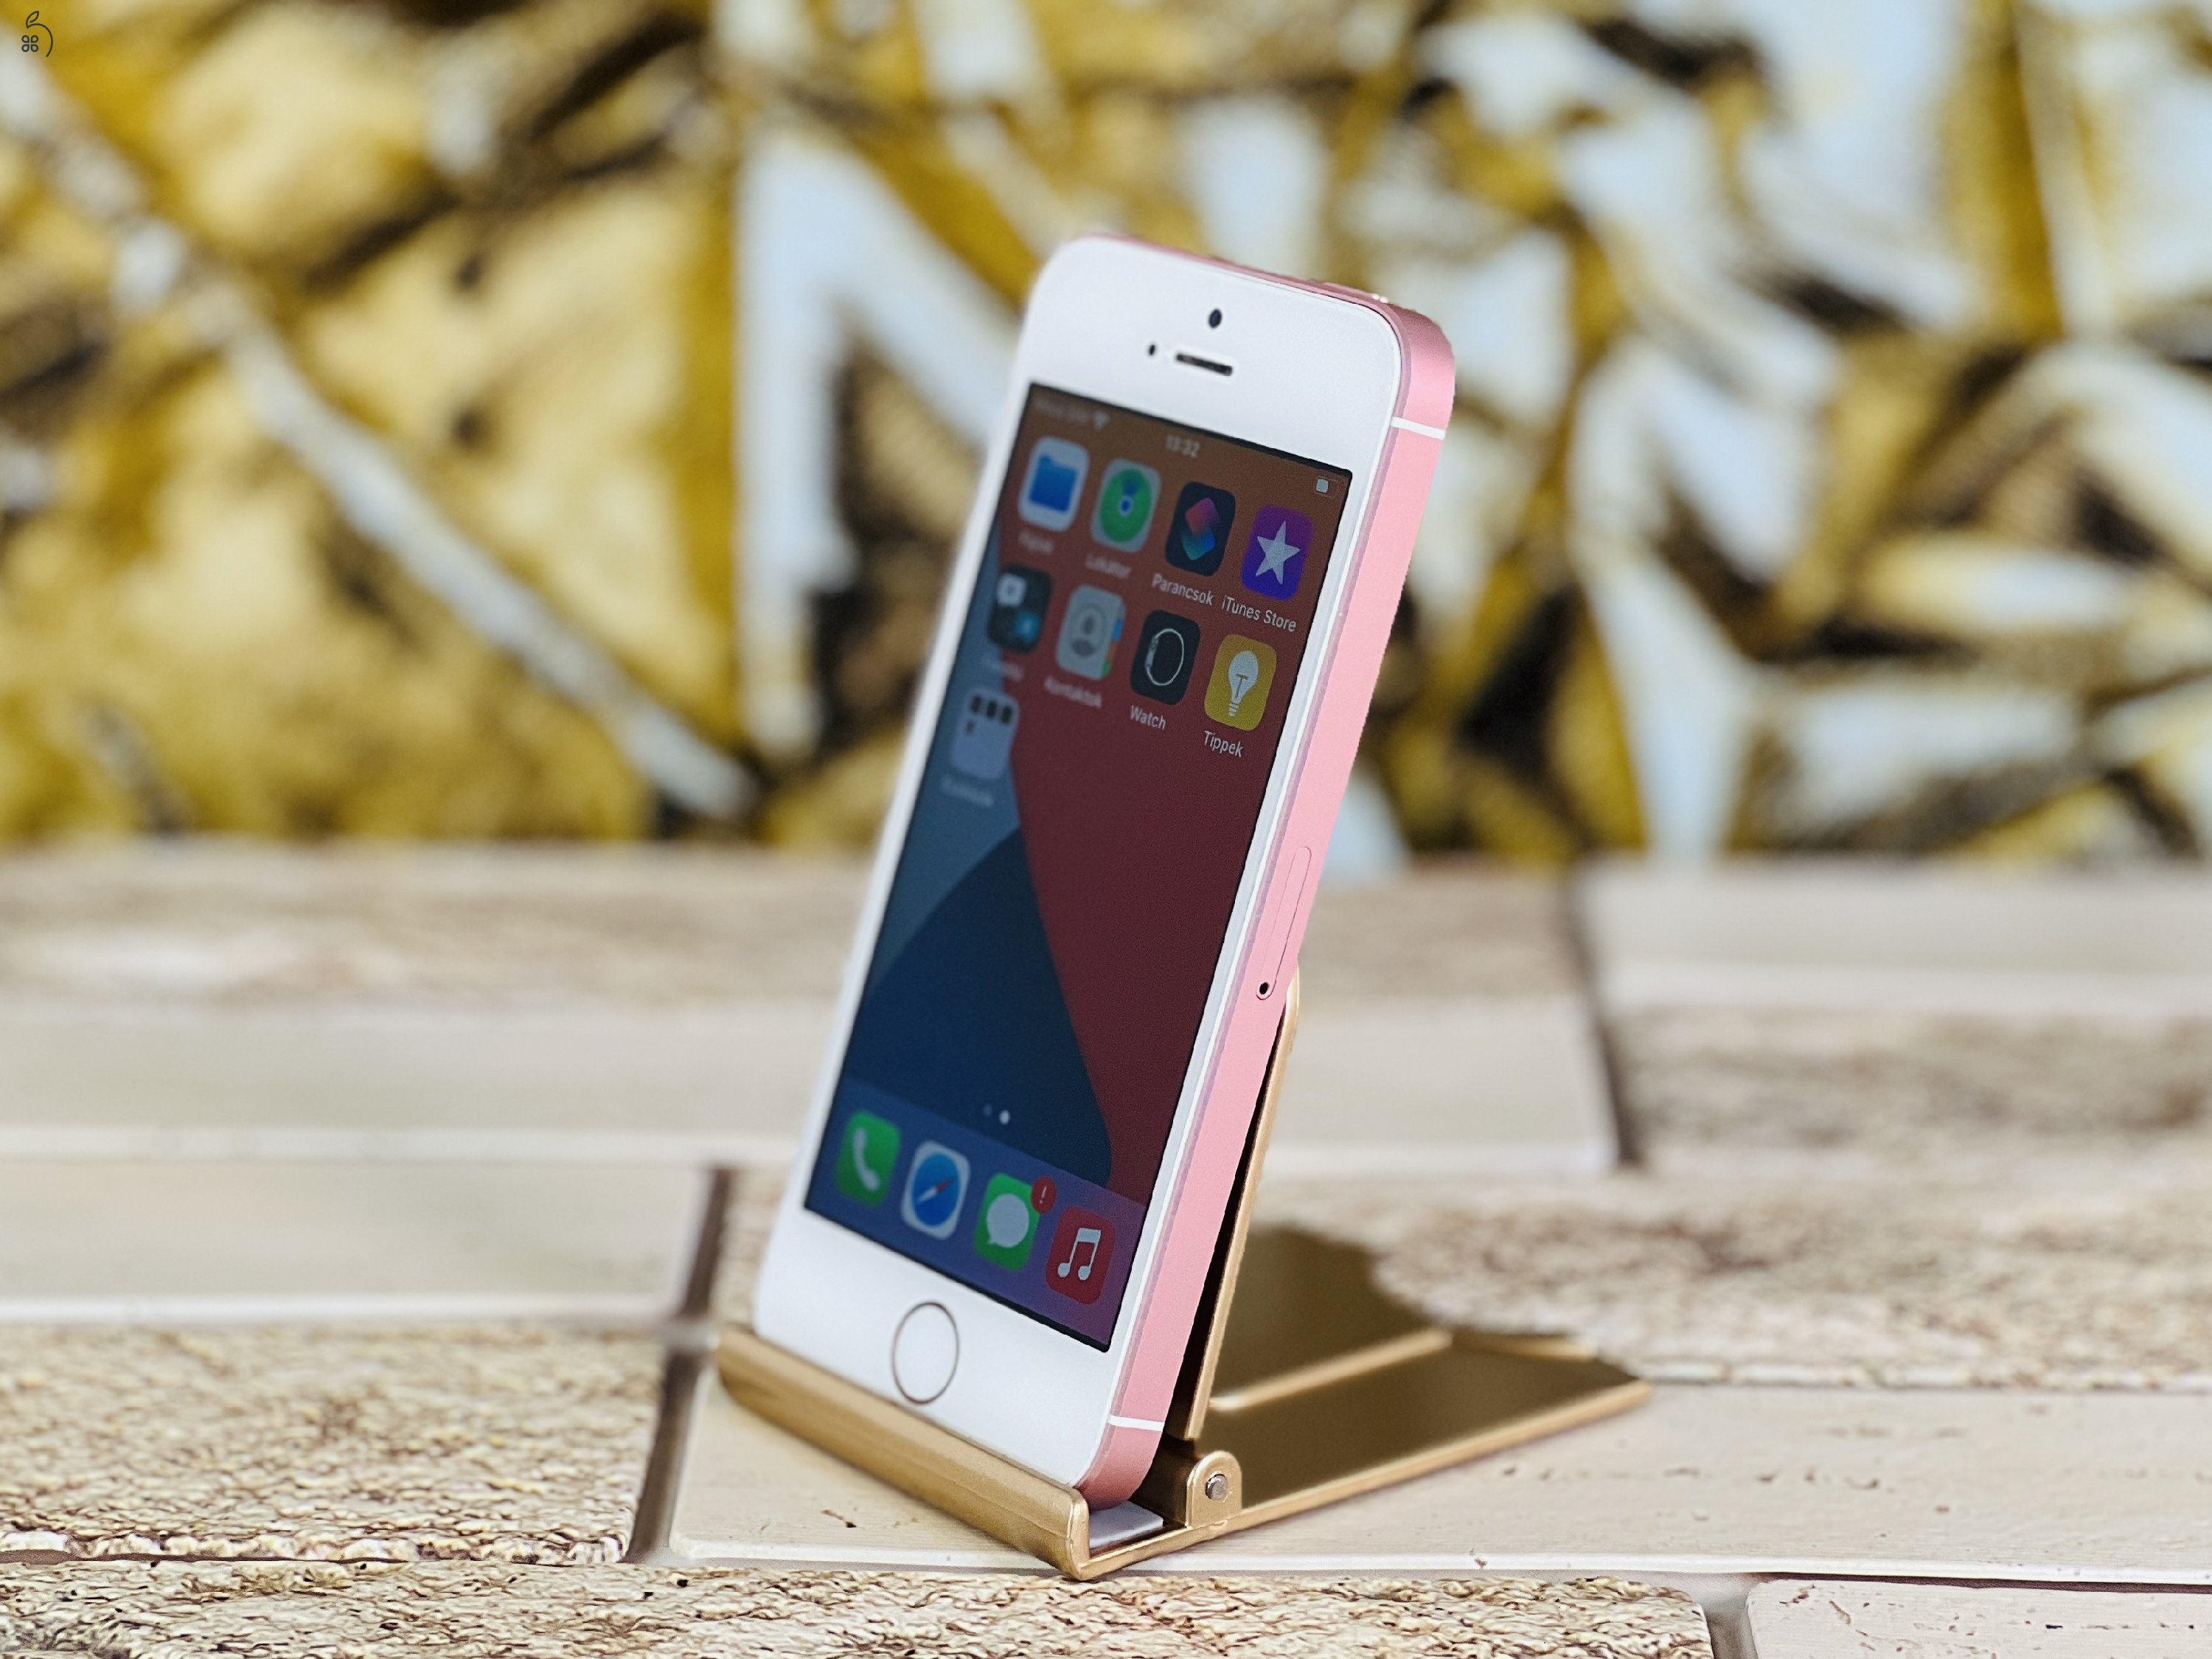 Eladó iPhone SE (2016) 32 GB Rose Gold 100% aksi szép állapotú - 12 HÓ GARANCIA - L4377